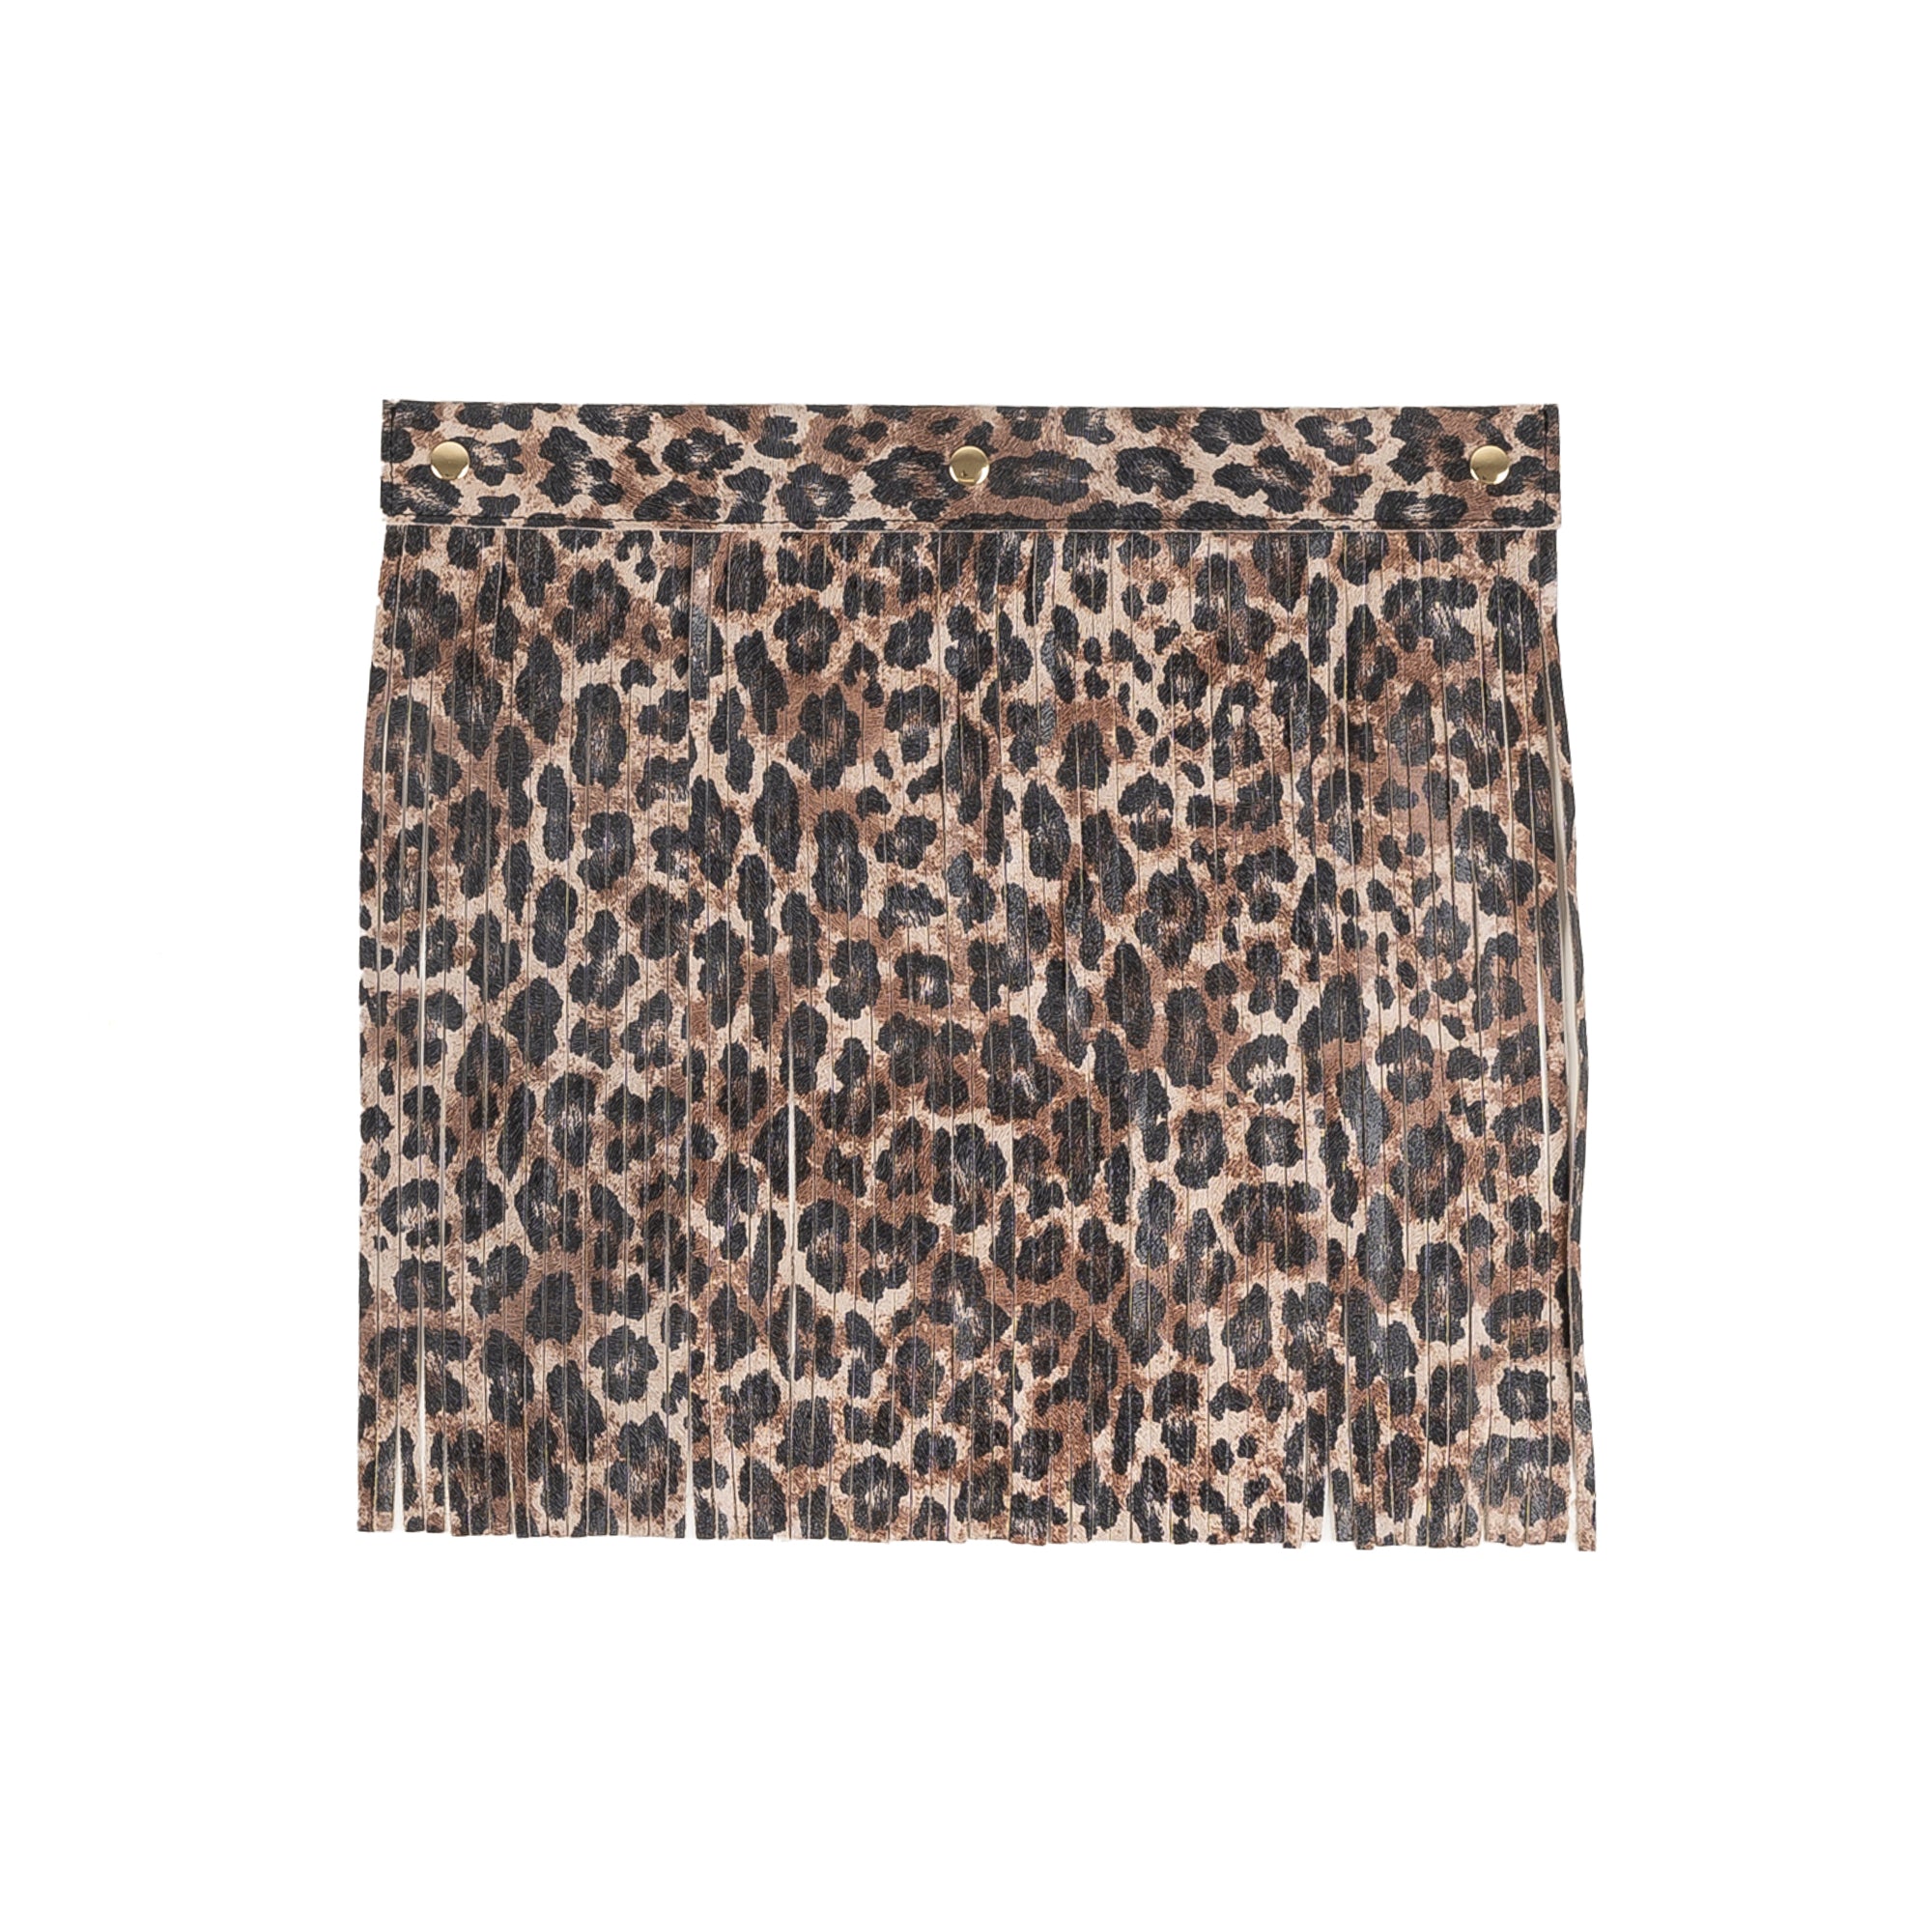 Brown-Leopard Fringes for Katy